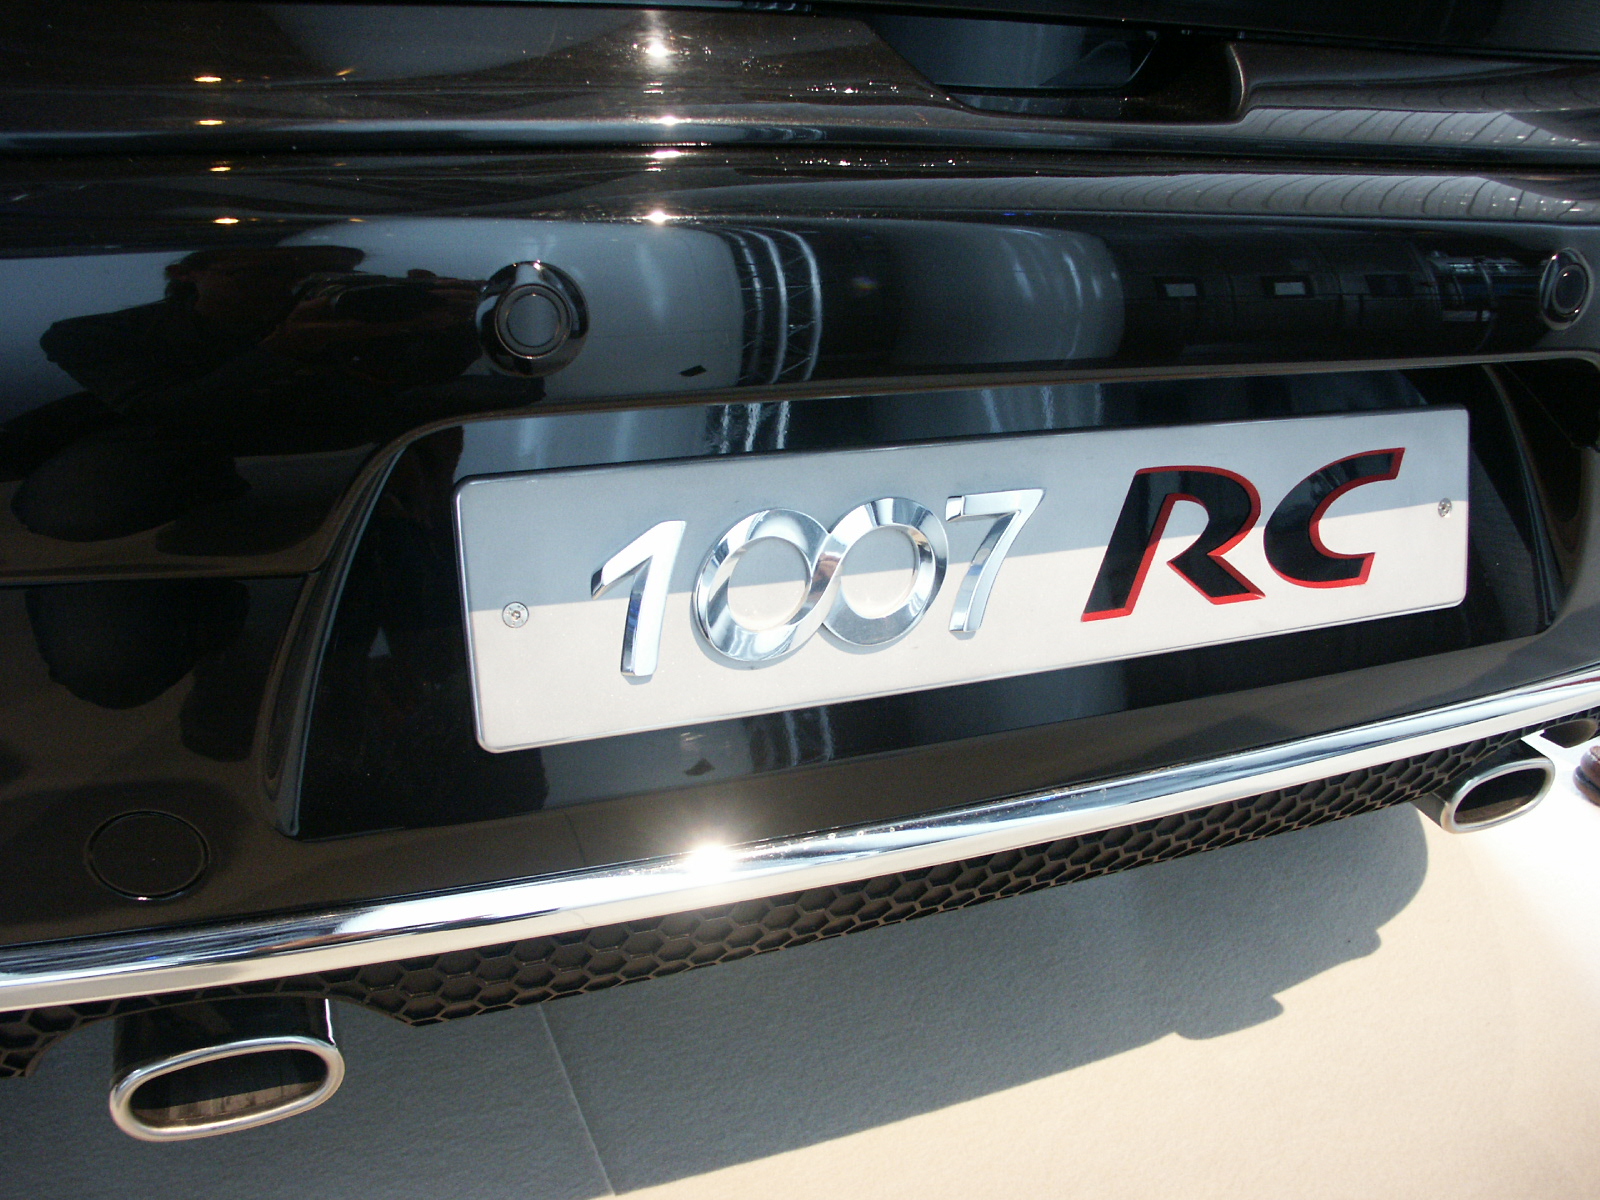  - Peugeot 1007 RC